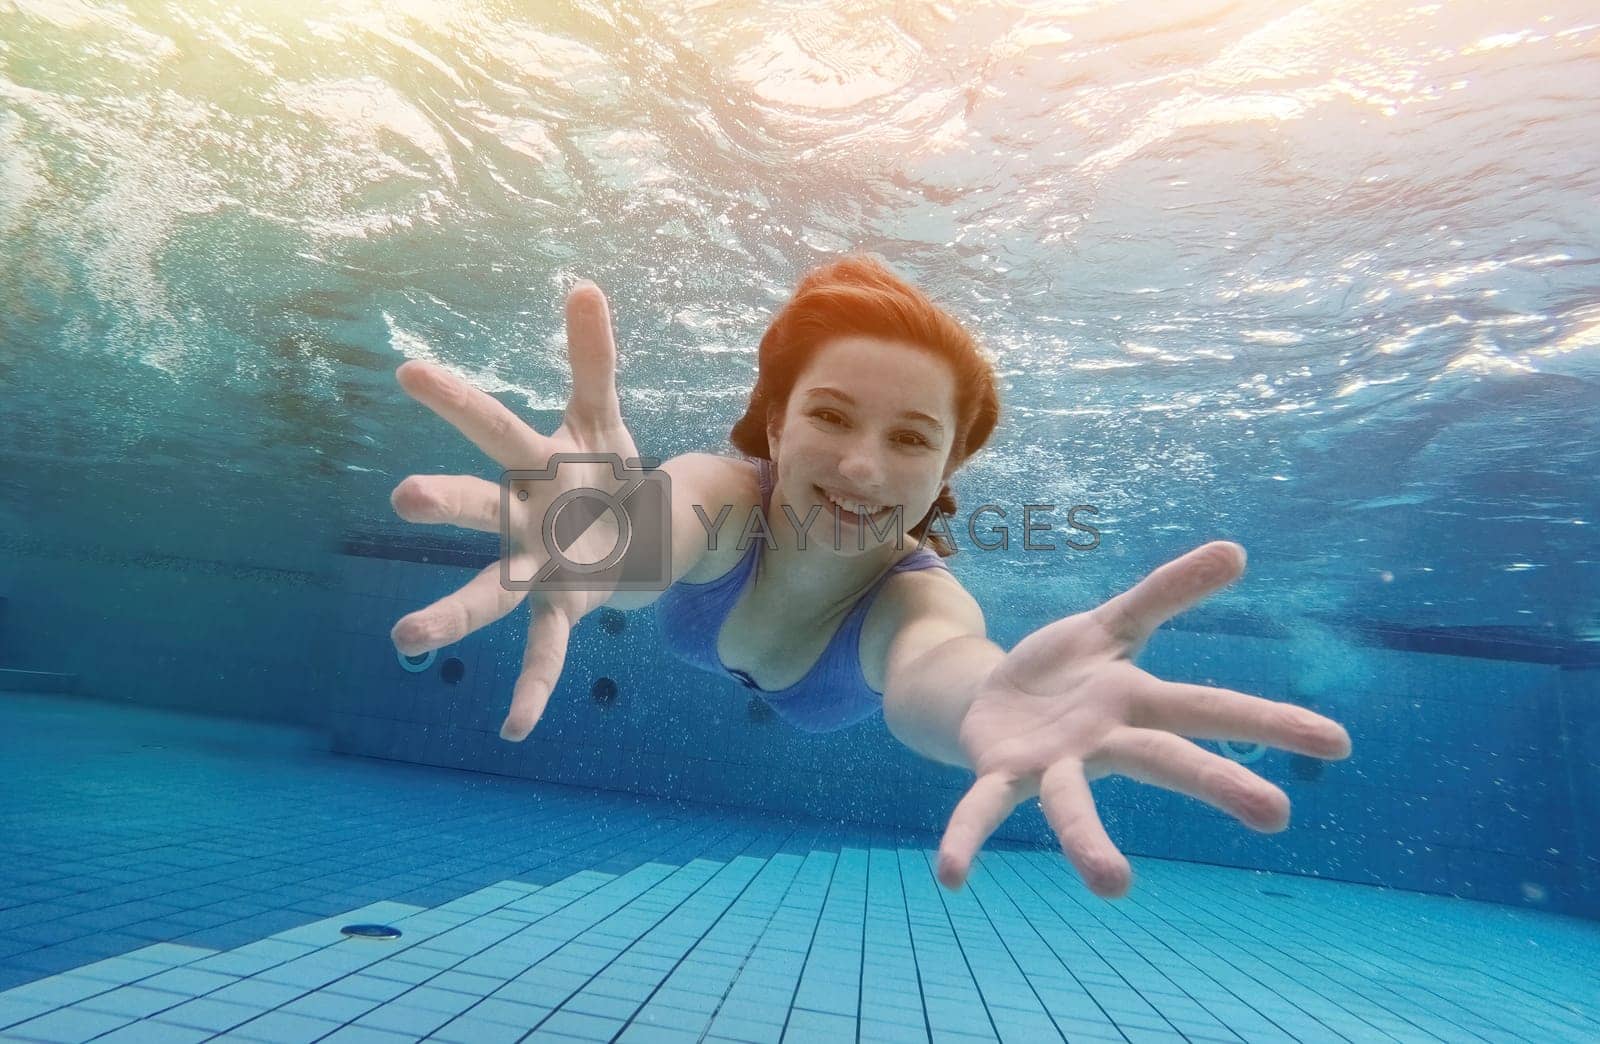 Royalty free image of Teen girl swimming under water in blue pool by GekaSkr